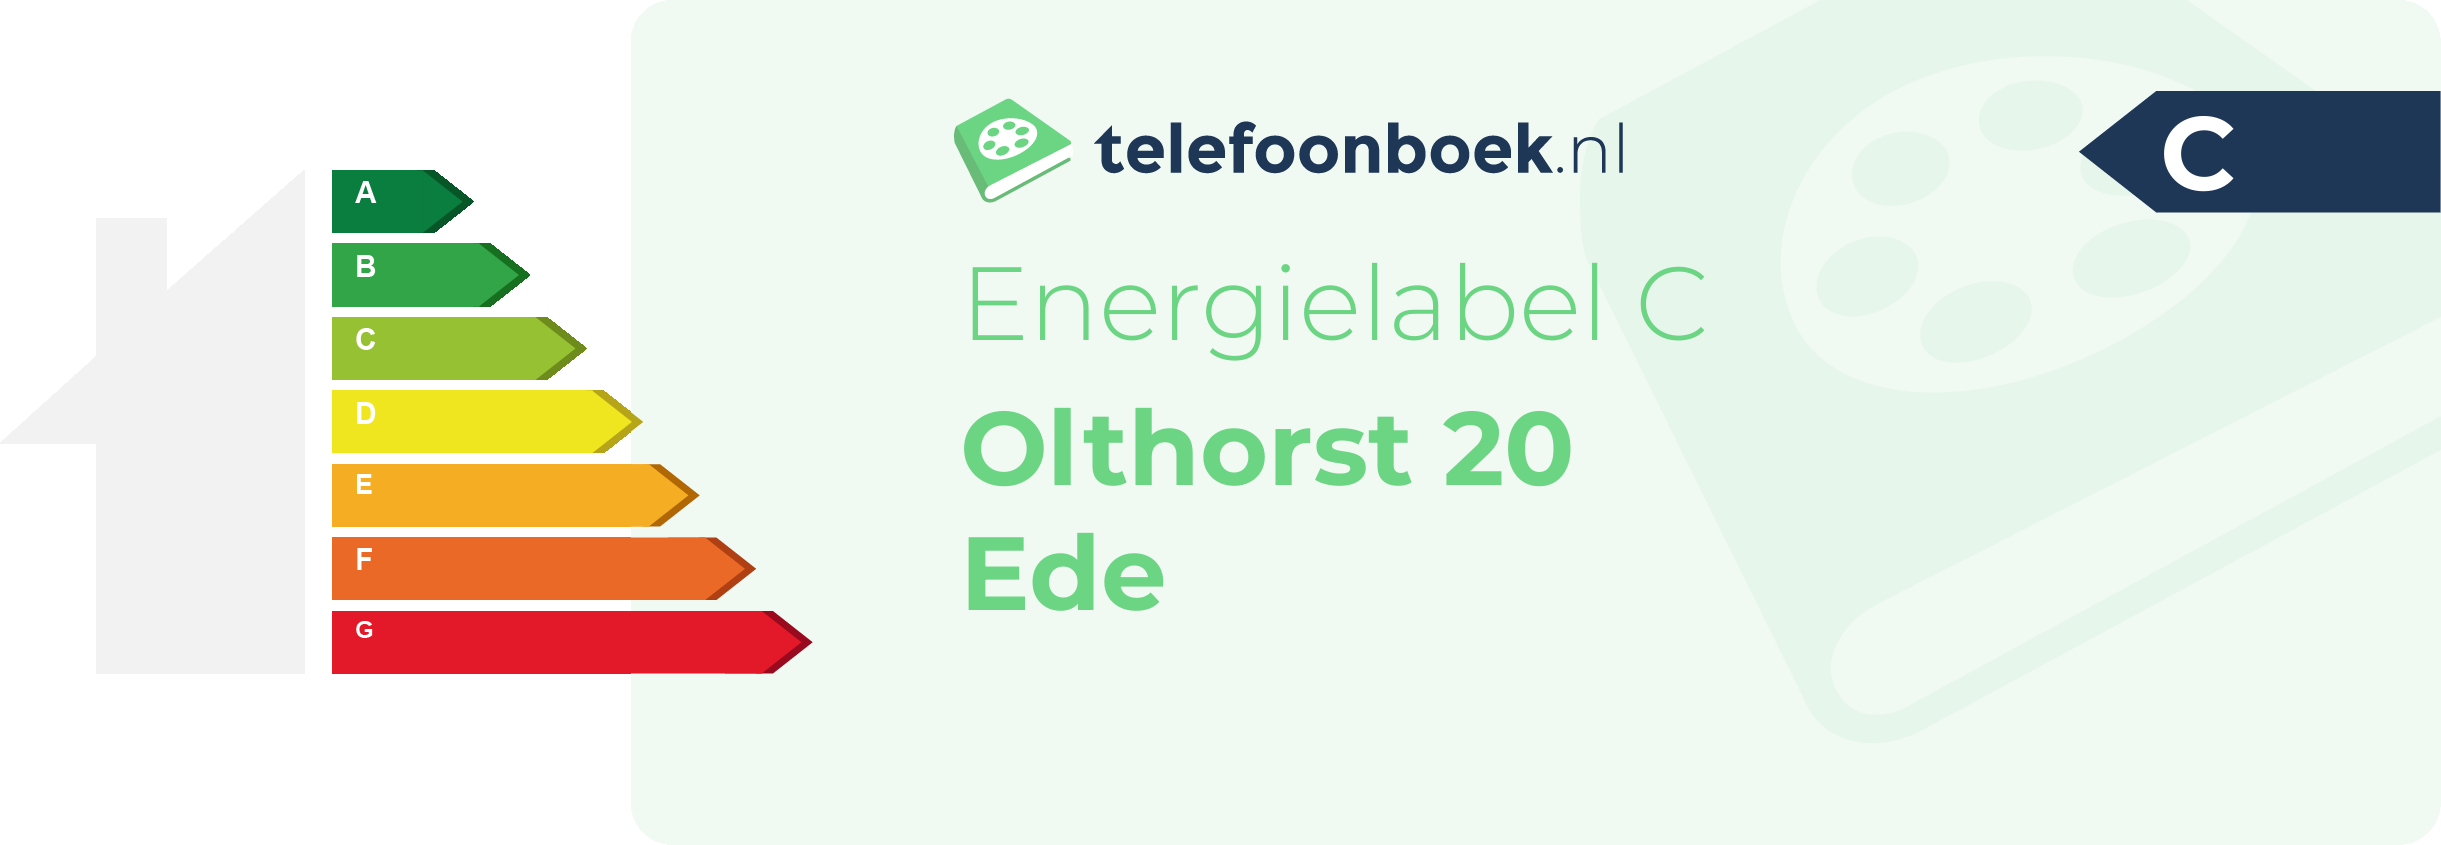 Energielabel Olthorst 20 Ede